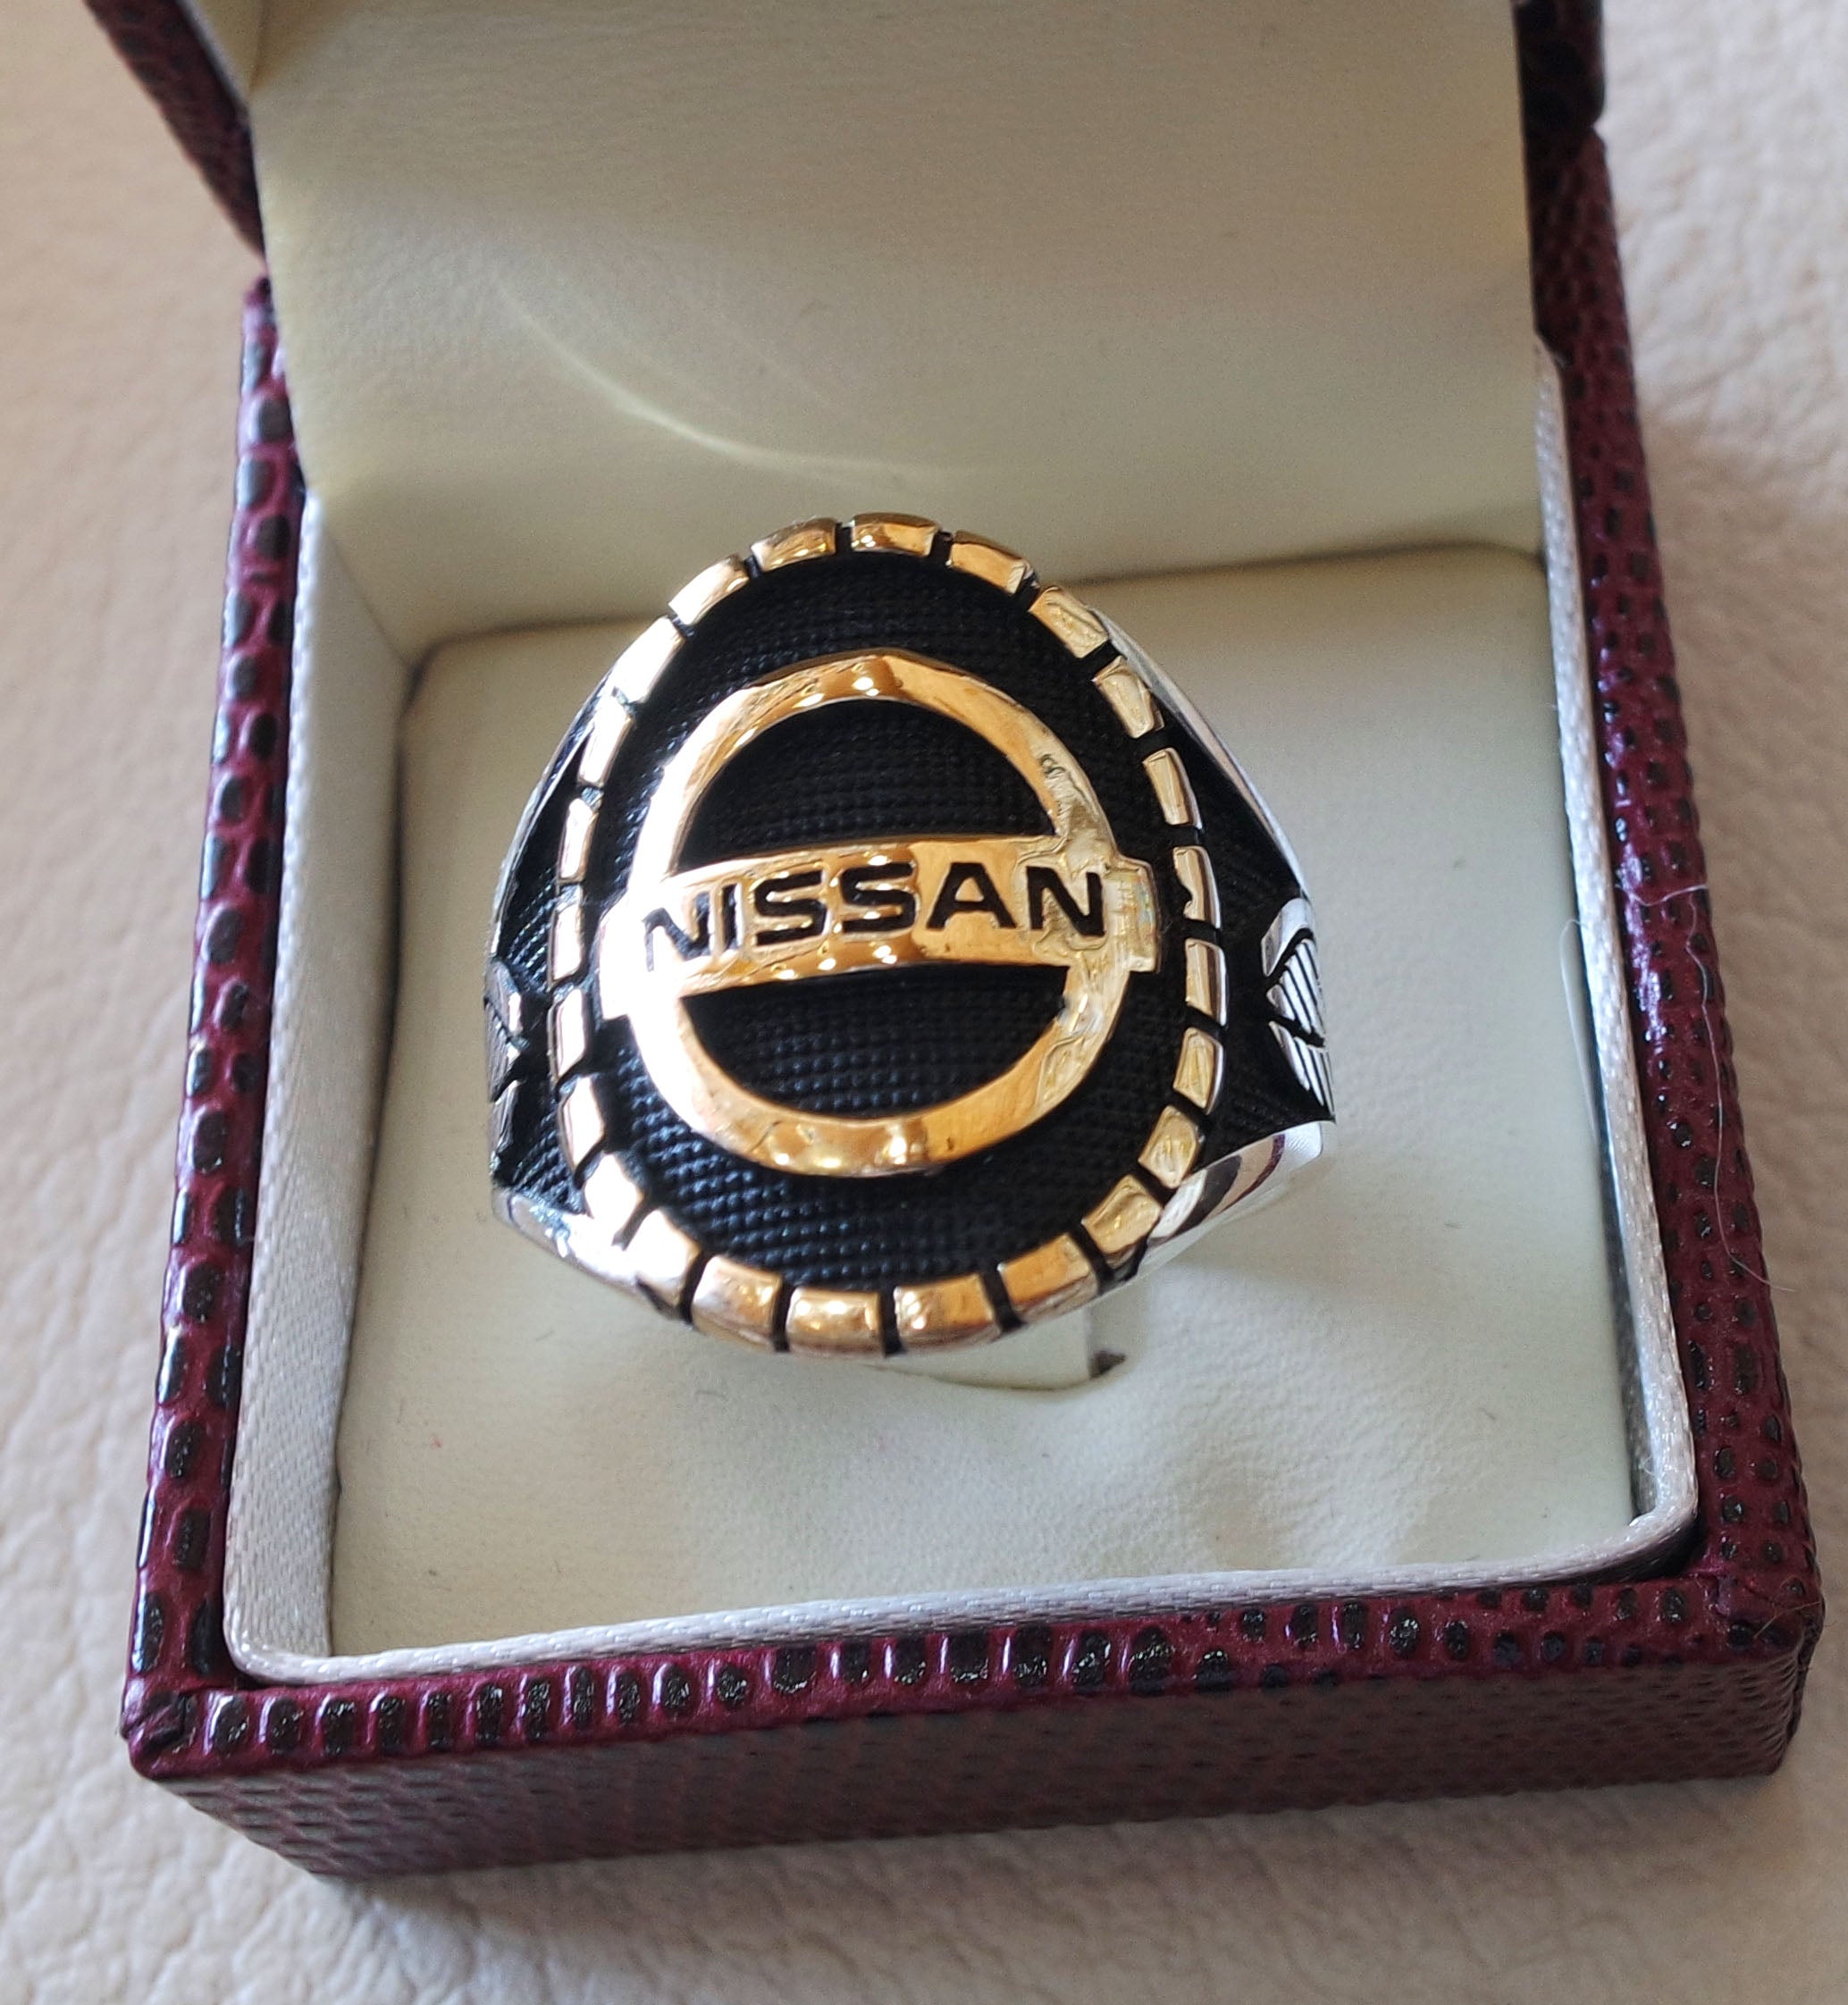 Nissan Sterling Silver 925 e bronzo anello pesante uomo nuova auto regalo ideale tutte le dimensioni